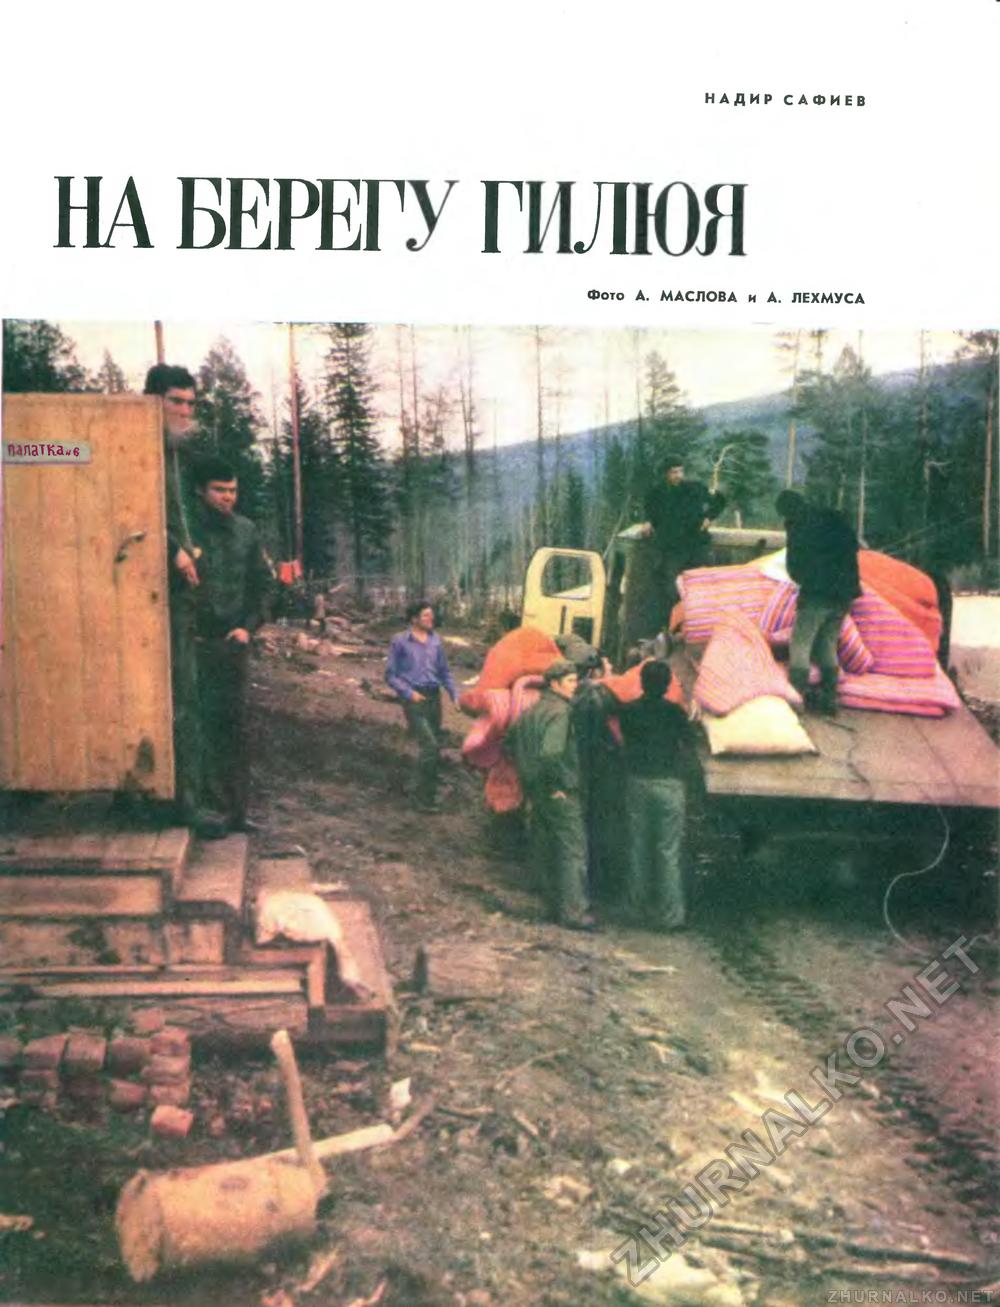   1974-11,  5